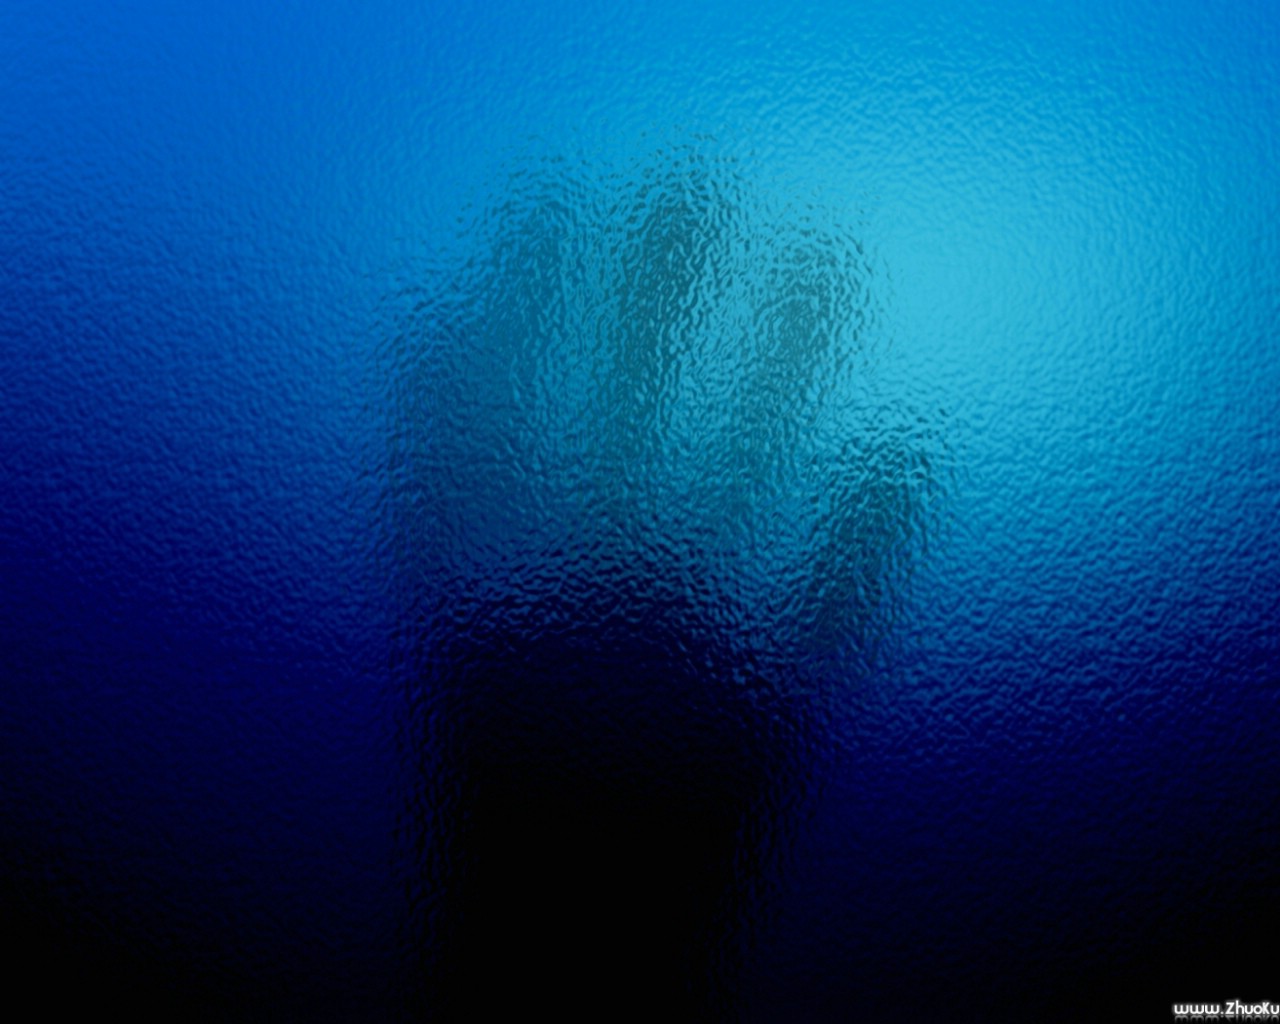 壁纸1280x1024蓝色透明水纹 壁纸11壁纸 蓝色透明水纹壁纸 蓝色透明水纹图片 蓝色透明水纹素材 精选壁纸 精选图库 精选图片素材桌面壁纸